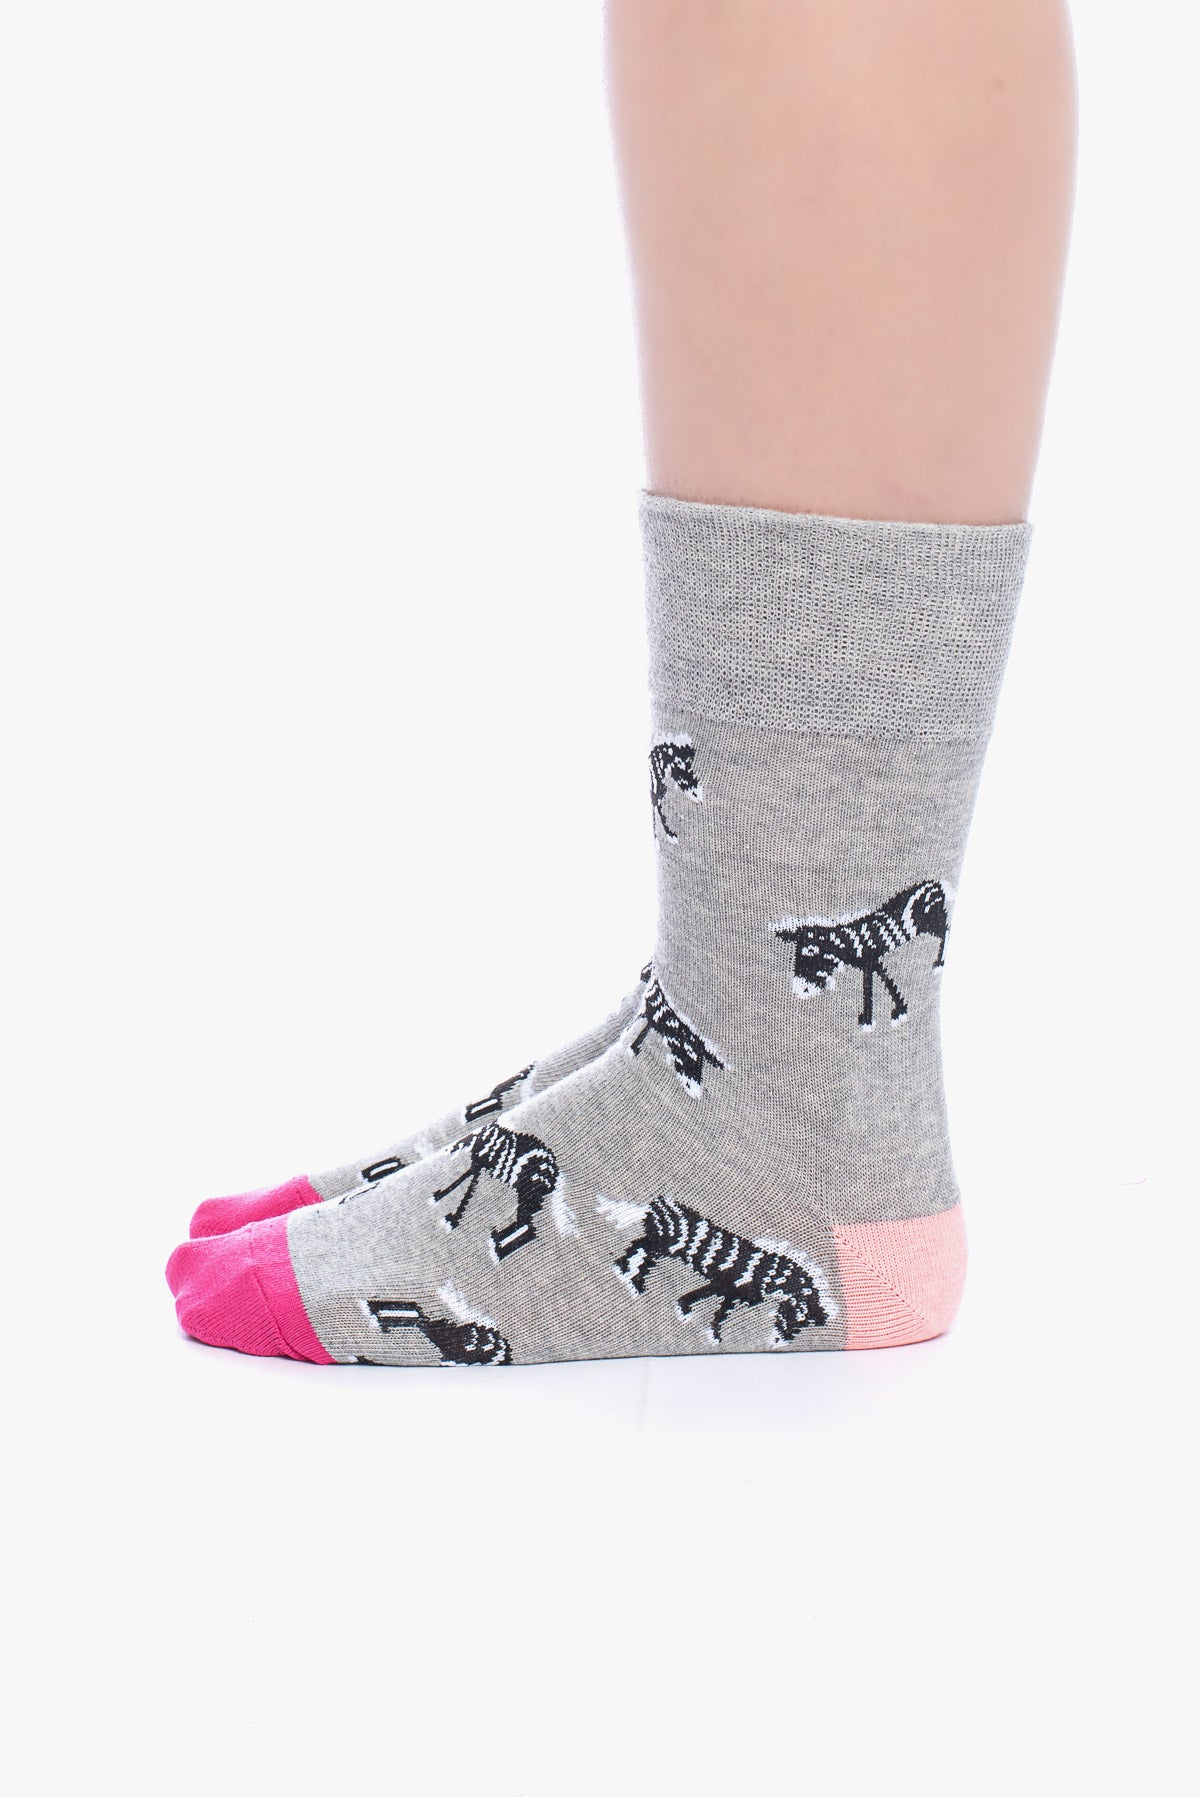 ANETTE 3 animal socks